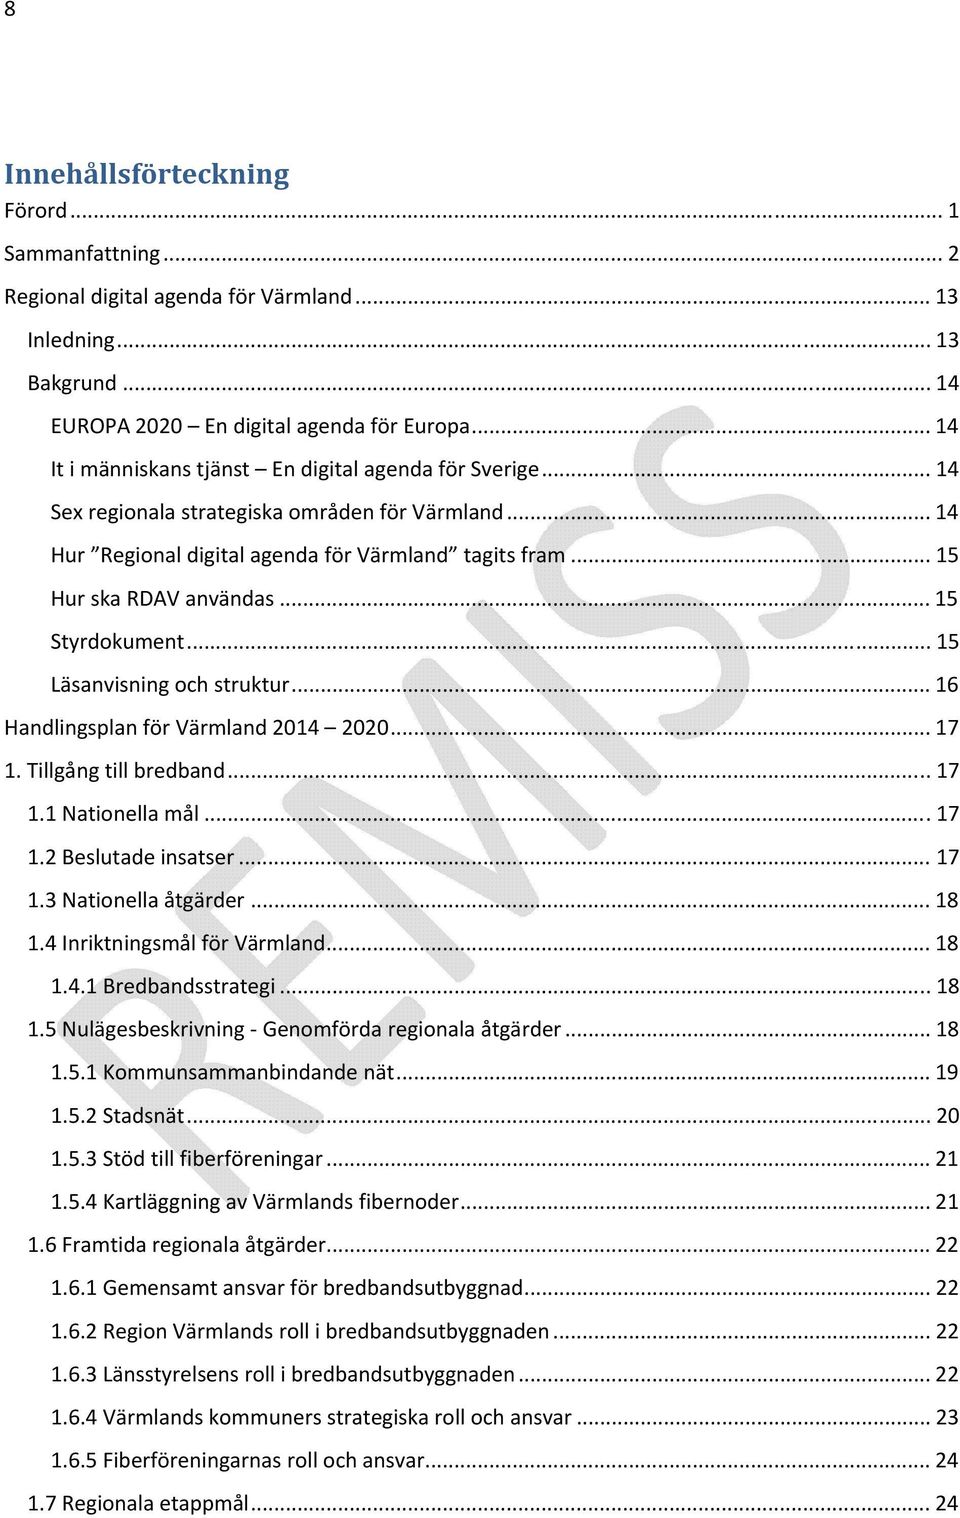 .. 15 Styrdokument... 15 Läsanvisning och struktur... 16 Handlingsplan för Värmland 2014 2020... 17 1. Tillgång till bredband... 17 1.1 Nationella mål...17 1.2 Beslutade insatser... 17 1.3 Nationella åtgärder.